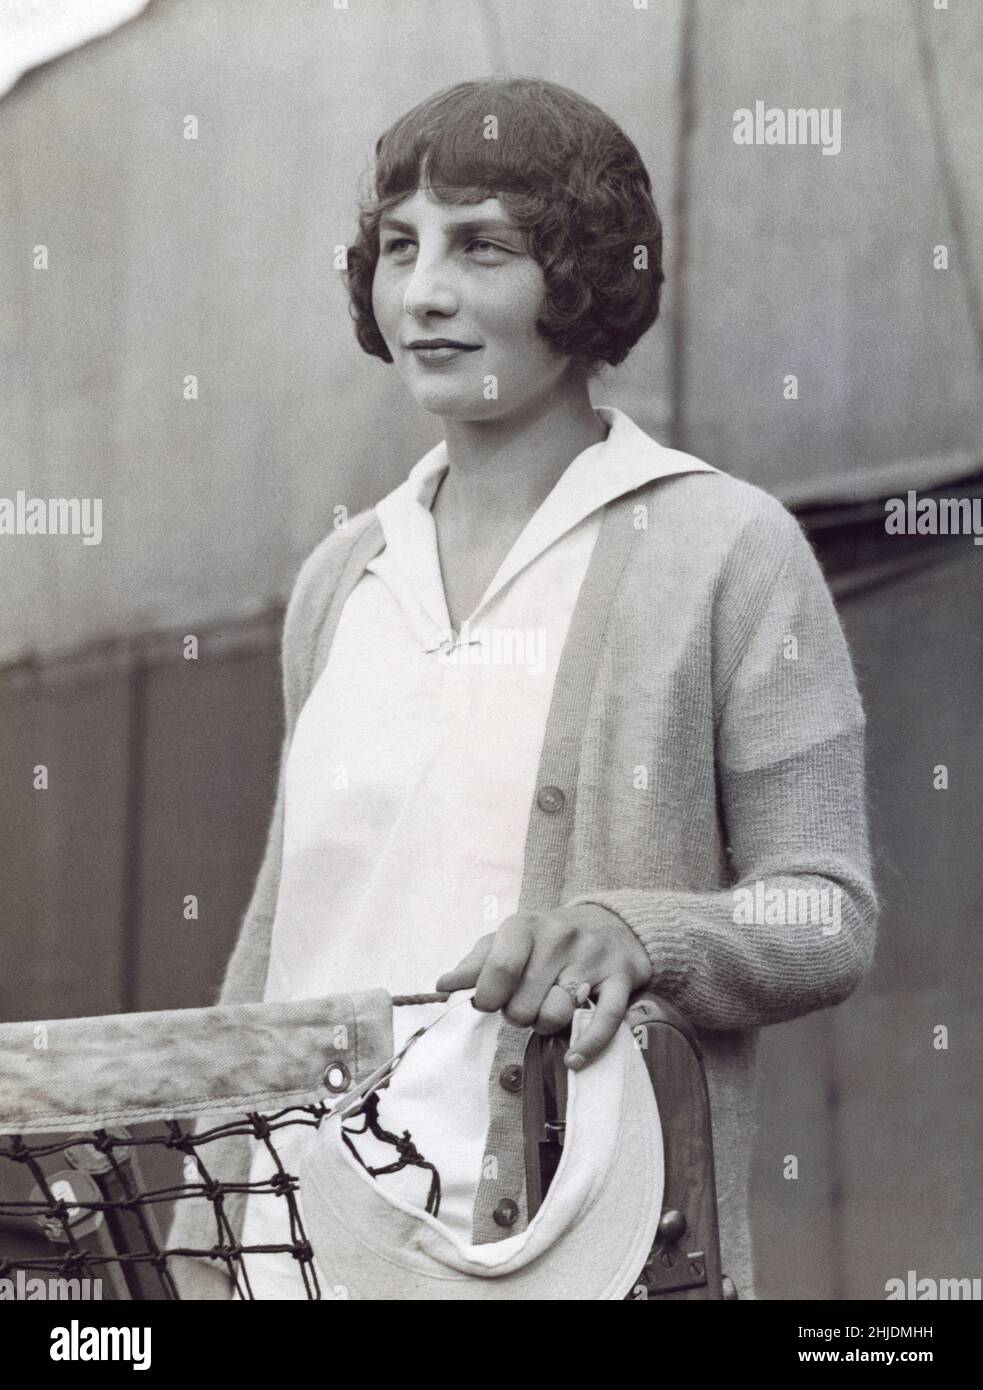 Helen Wills. Amerikanischer Teenie-Spieler. Oktober 6 1905 - Januar 1 1998. Auch bekannt durch ihre verheirateten Namen Helen Wills Moody und Helen Wills Roark. Sie wurde berühmt, weil sie insgesamt neun Jahre lang die Spitzenposition im Frauen-Tennis innehielte: 1927–33, 1935 und 1938. Während ihrer Karriere gewann sie 31 Grand-Slam-Turniertitel (Einzel-, Doppel- und Mixed-Doubles), darunter 19 Einzeltitel. Wills war die erste amerikanische Athletin, die eine globale Berühmtheit wurde und Freundschaften mit Royalty- und Filmstars geschlossen hat, obwohl sie es vorgezogen hat, aus dem Rampenlicht zu bleiben. Sie wurde für ihren anmutigen Körperbau bewundert Stockfoto